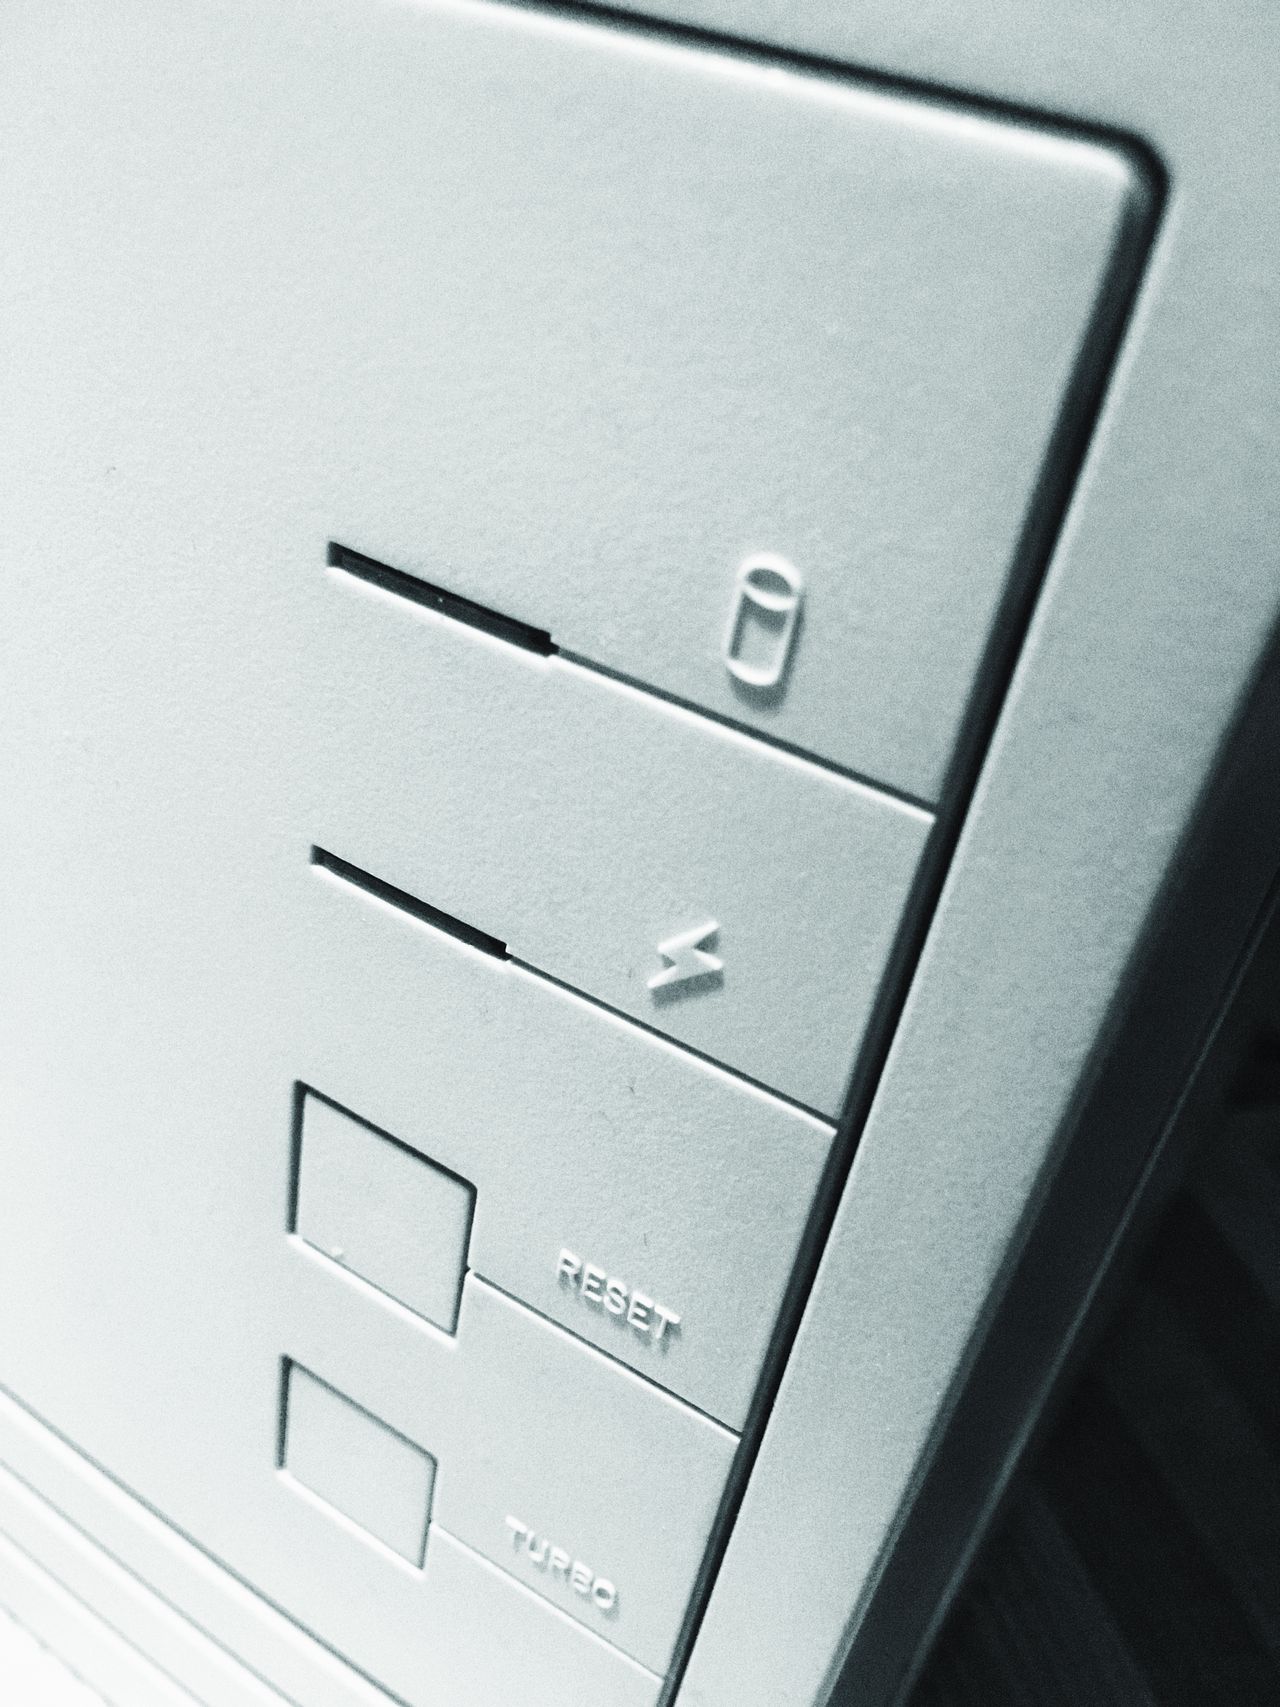 Przycisk 'Turbo' służył do spowolnienia komputera, aby rozwiązać problemy ze starymi programami, zależnymi od prędkości zegara. Na nowszym sprzęcie dostawały "turbodoładowania".